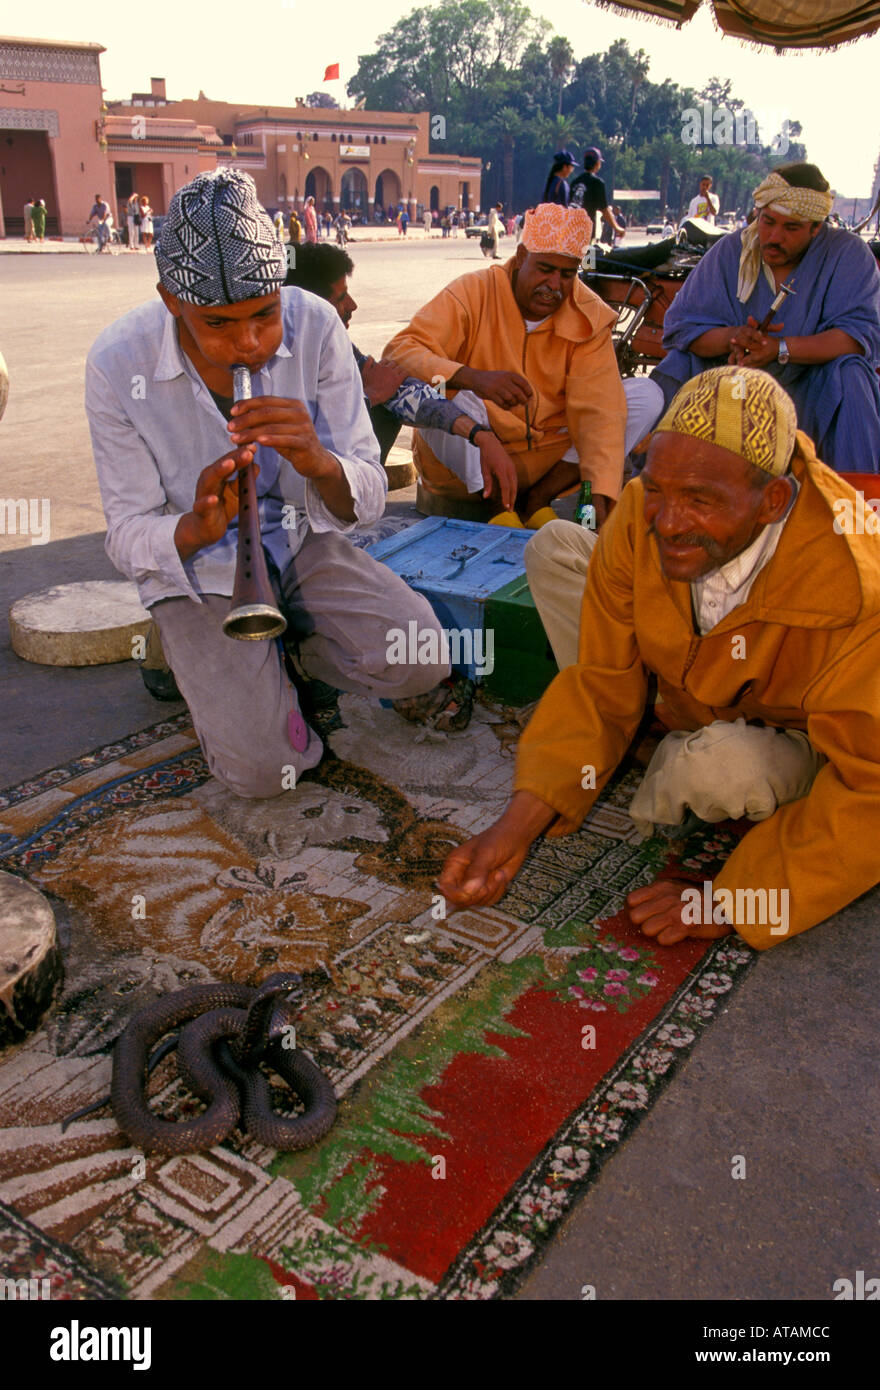 Marocchini, uomini marocchini, snake incantatore, incantatori di serpenti, Djemaa el-Fna, città di Marrakech, Provincia di Marrakech, Marocco, Africa Settentrionale, Africa Foto Stock